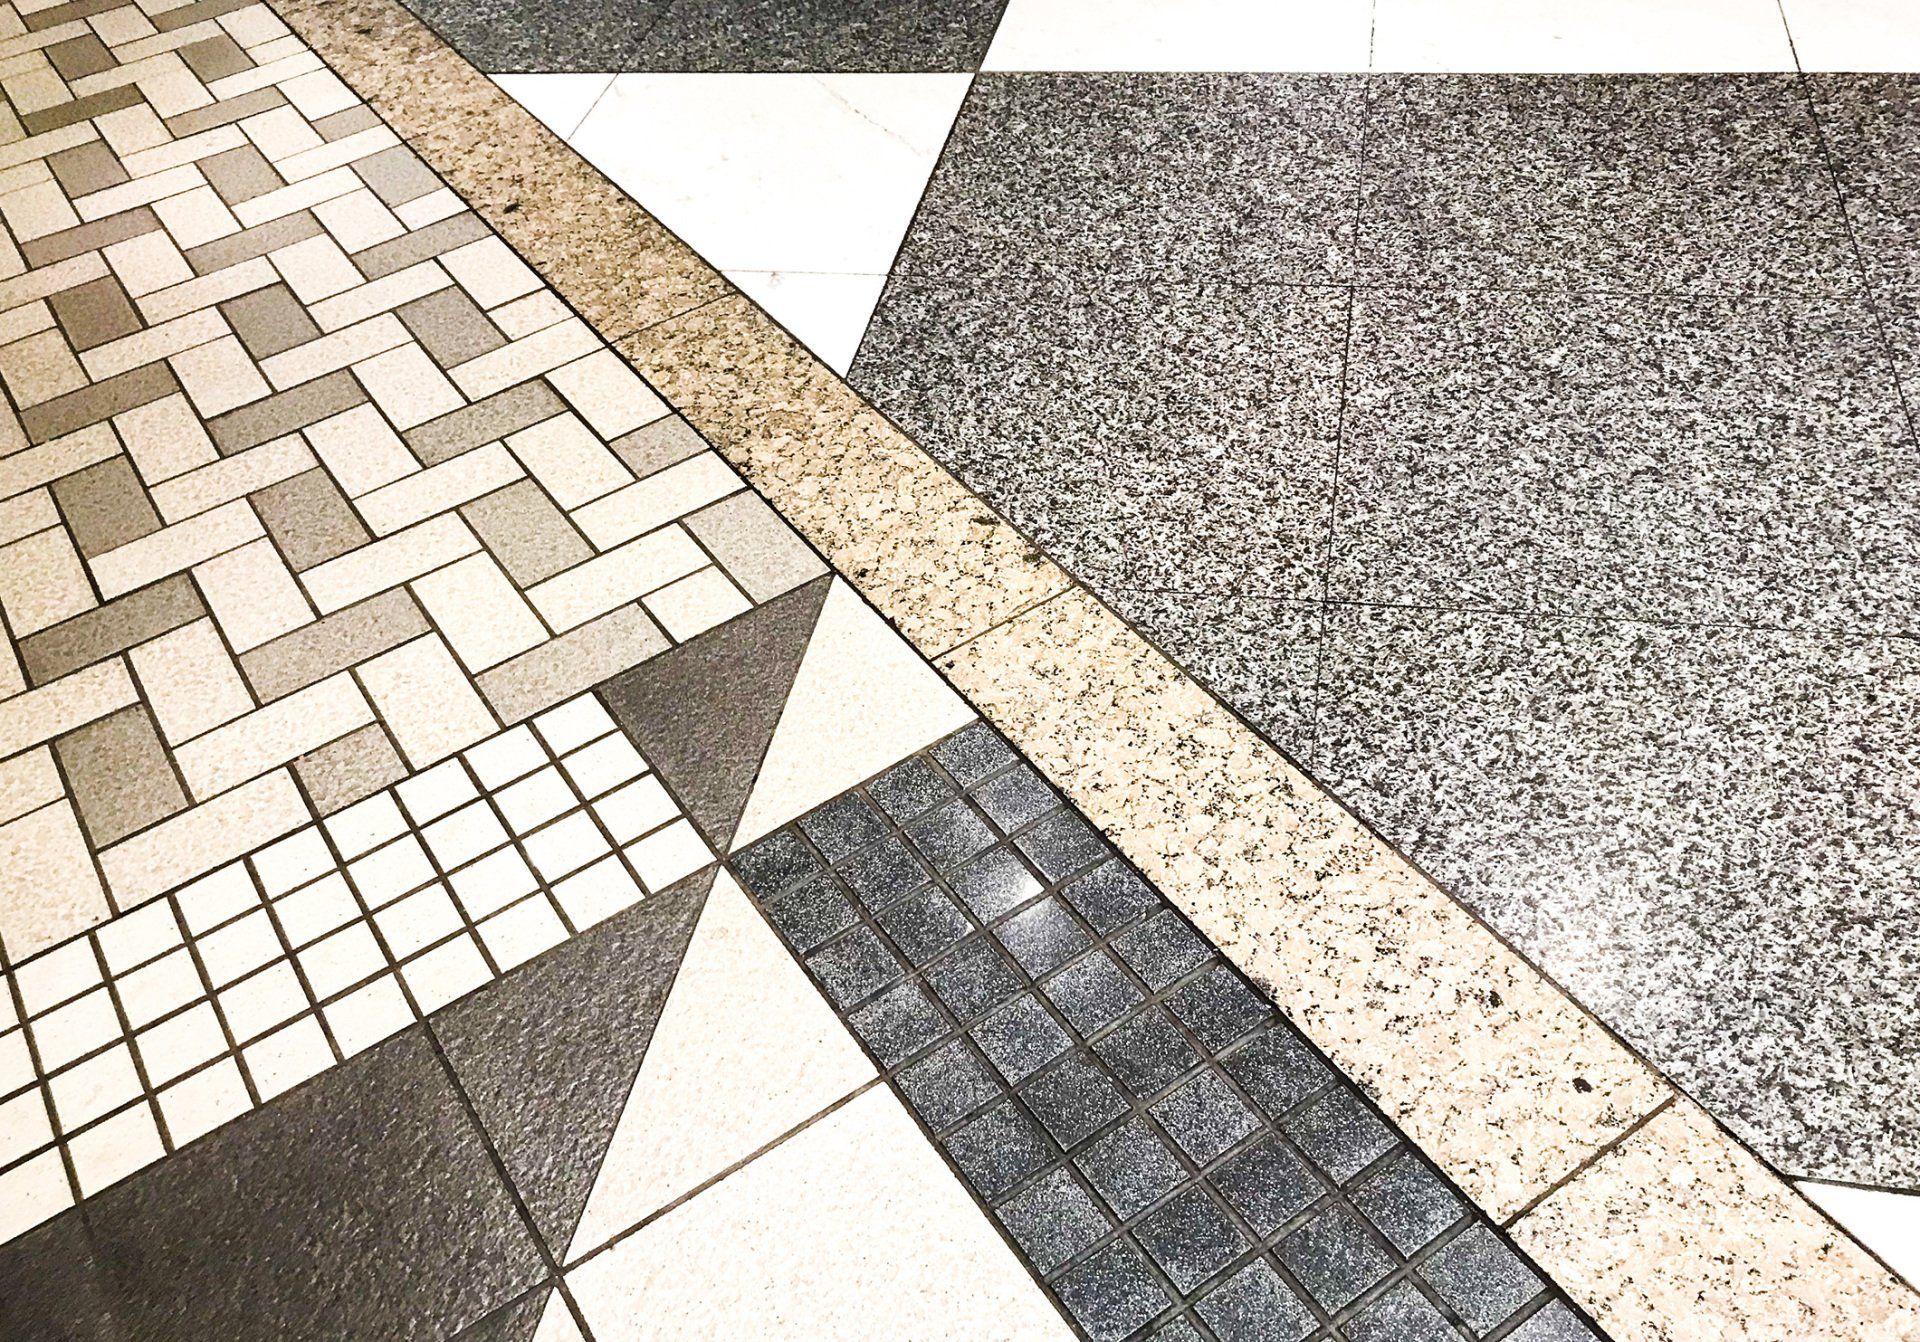 Geometric Shapes Tiled Floor - Hanover, MN - Hanover Flooring